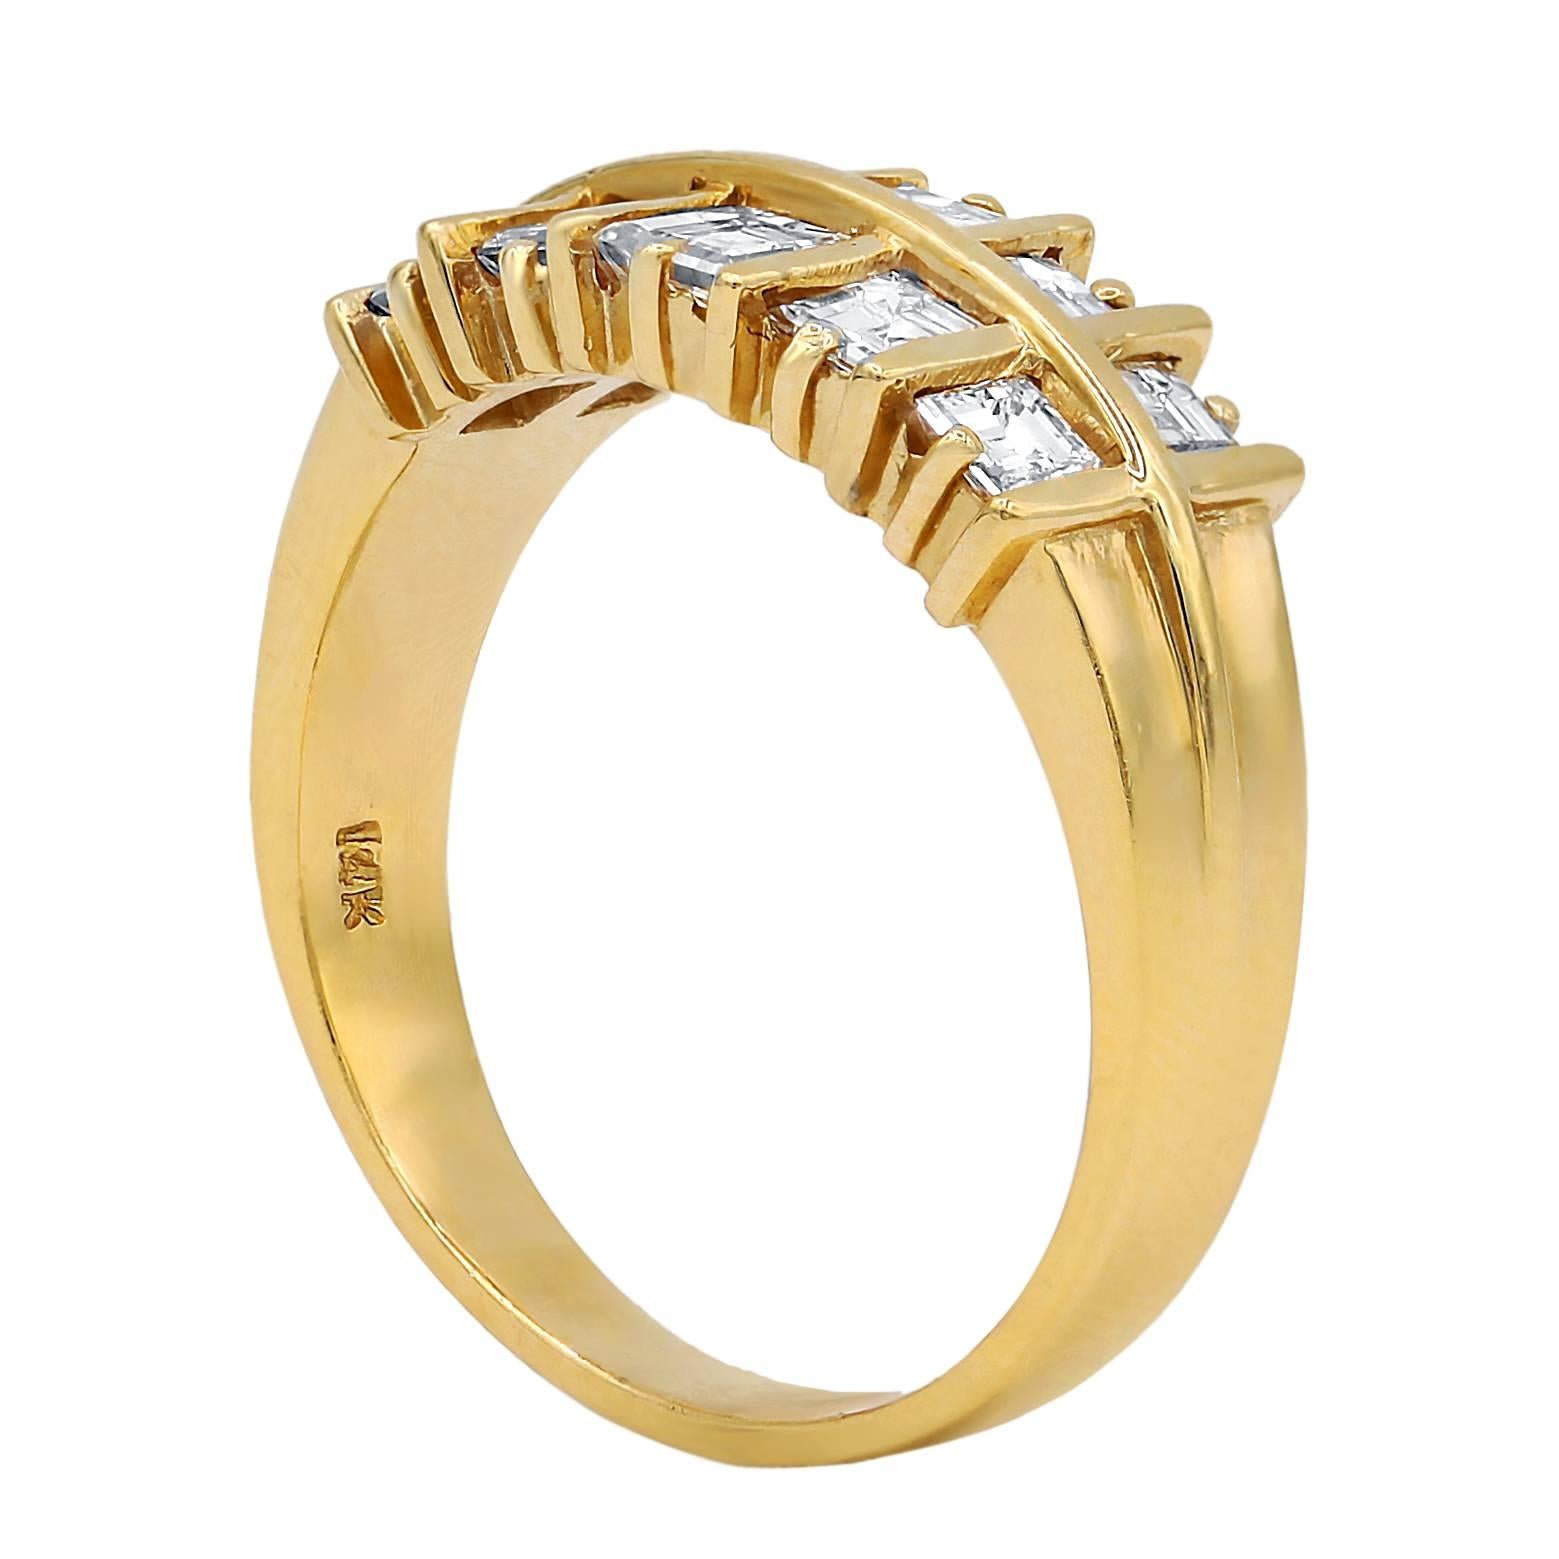 Zweireihiger Ehering bestehend aus 10 Diamanten im Assher-Schliff mit 1,20 Karat FG-Farbe/VS-Reinheit, gefasst in 14 Karat Gelbgold.